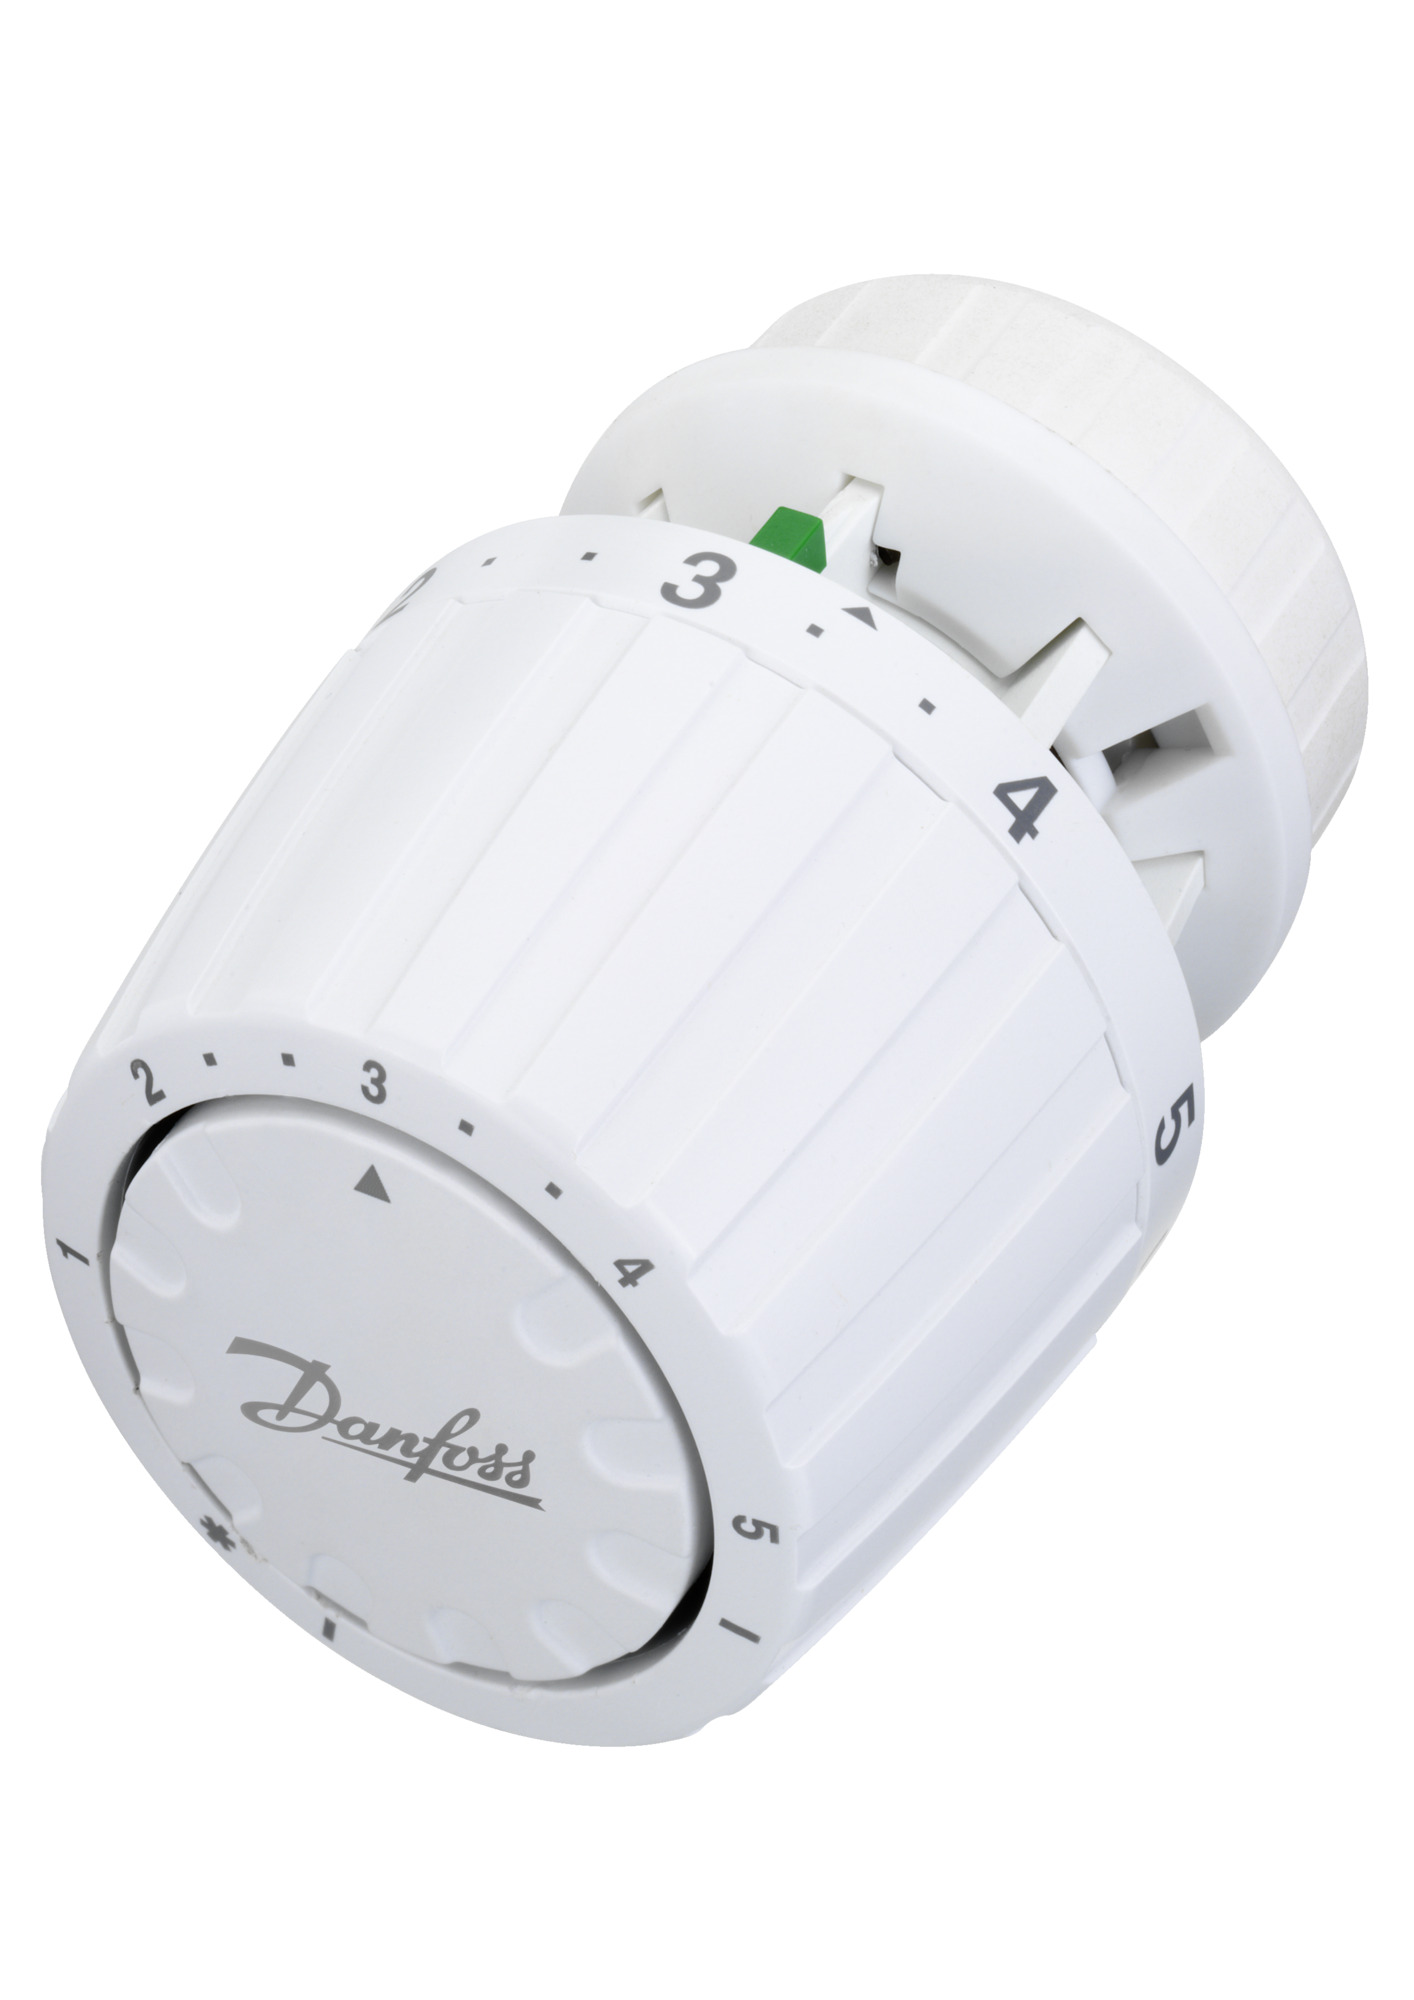 DANFOSS RA 2980 thermostatisch regelelement met ingebouwde voeler